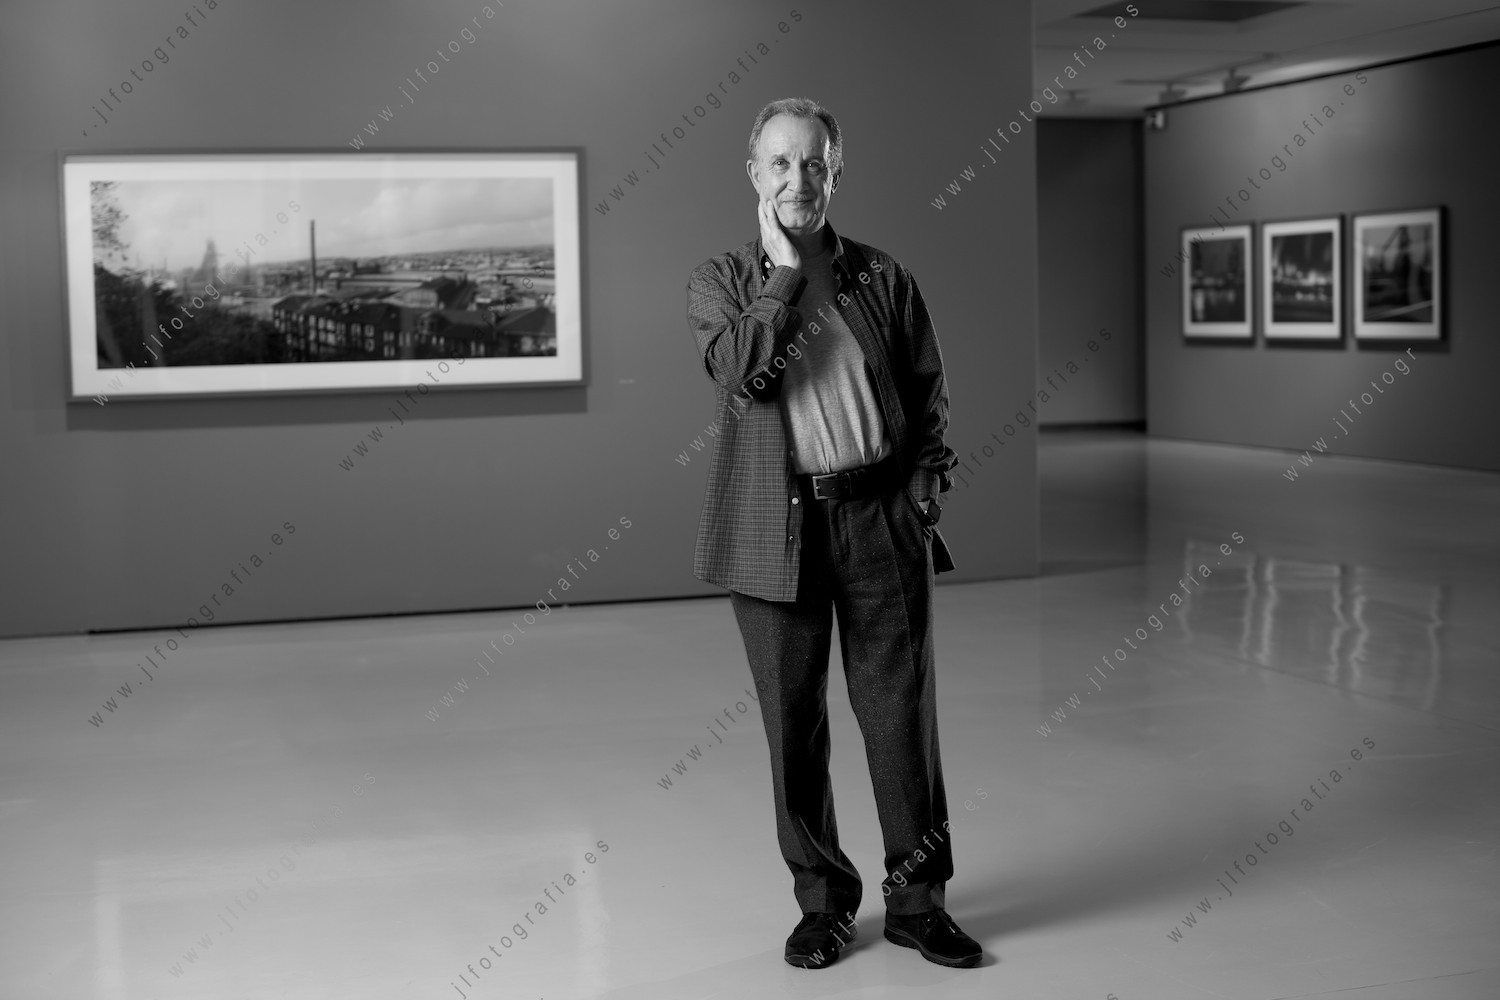 Retrato del fotógrafo de arquitectura Carlos Cánovas en la Sala de Exposiciones de Bilbao.